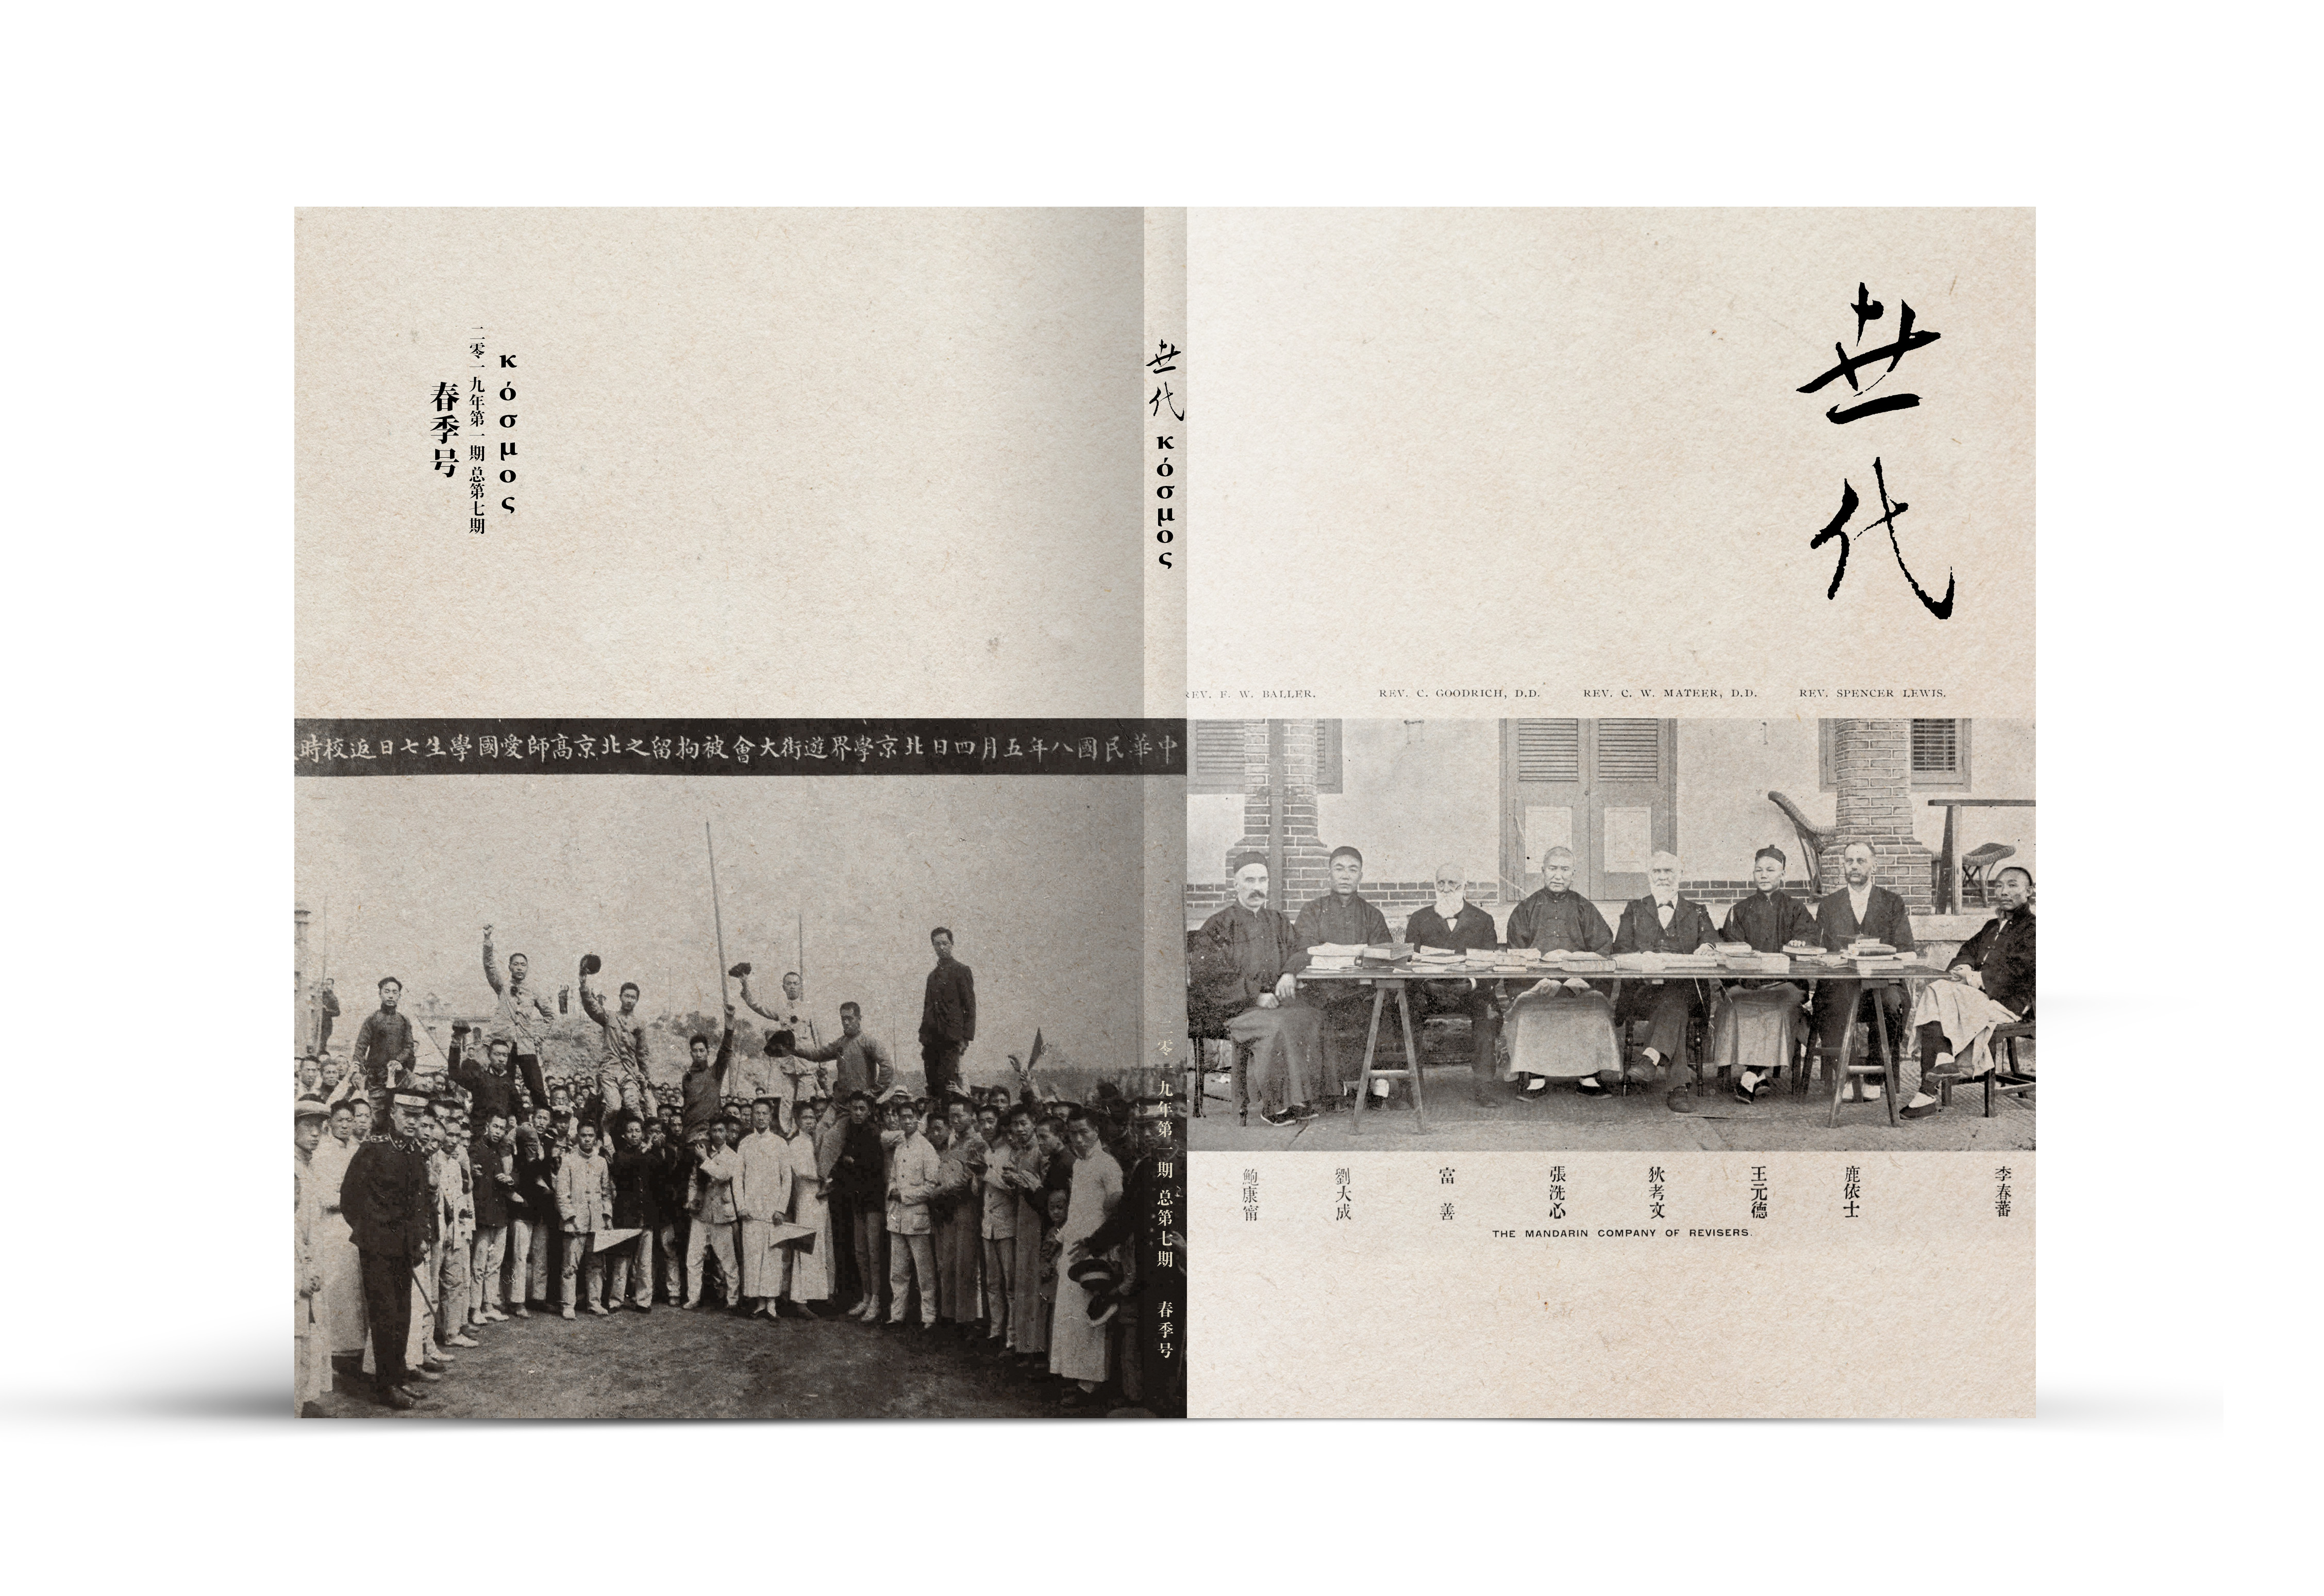 1919年前后中国的多重景象 五四运动 和合本圣经 及其它 许宏 世代